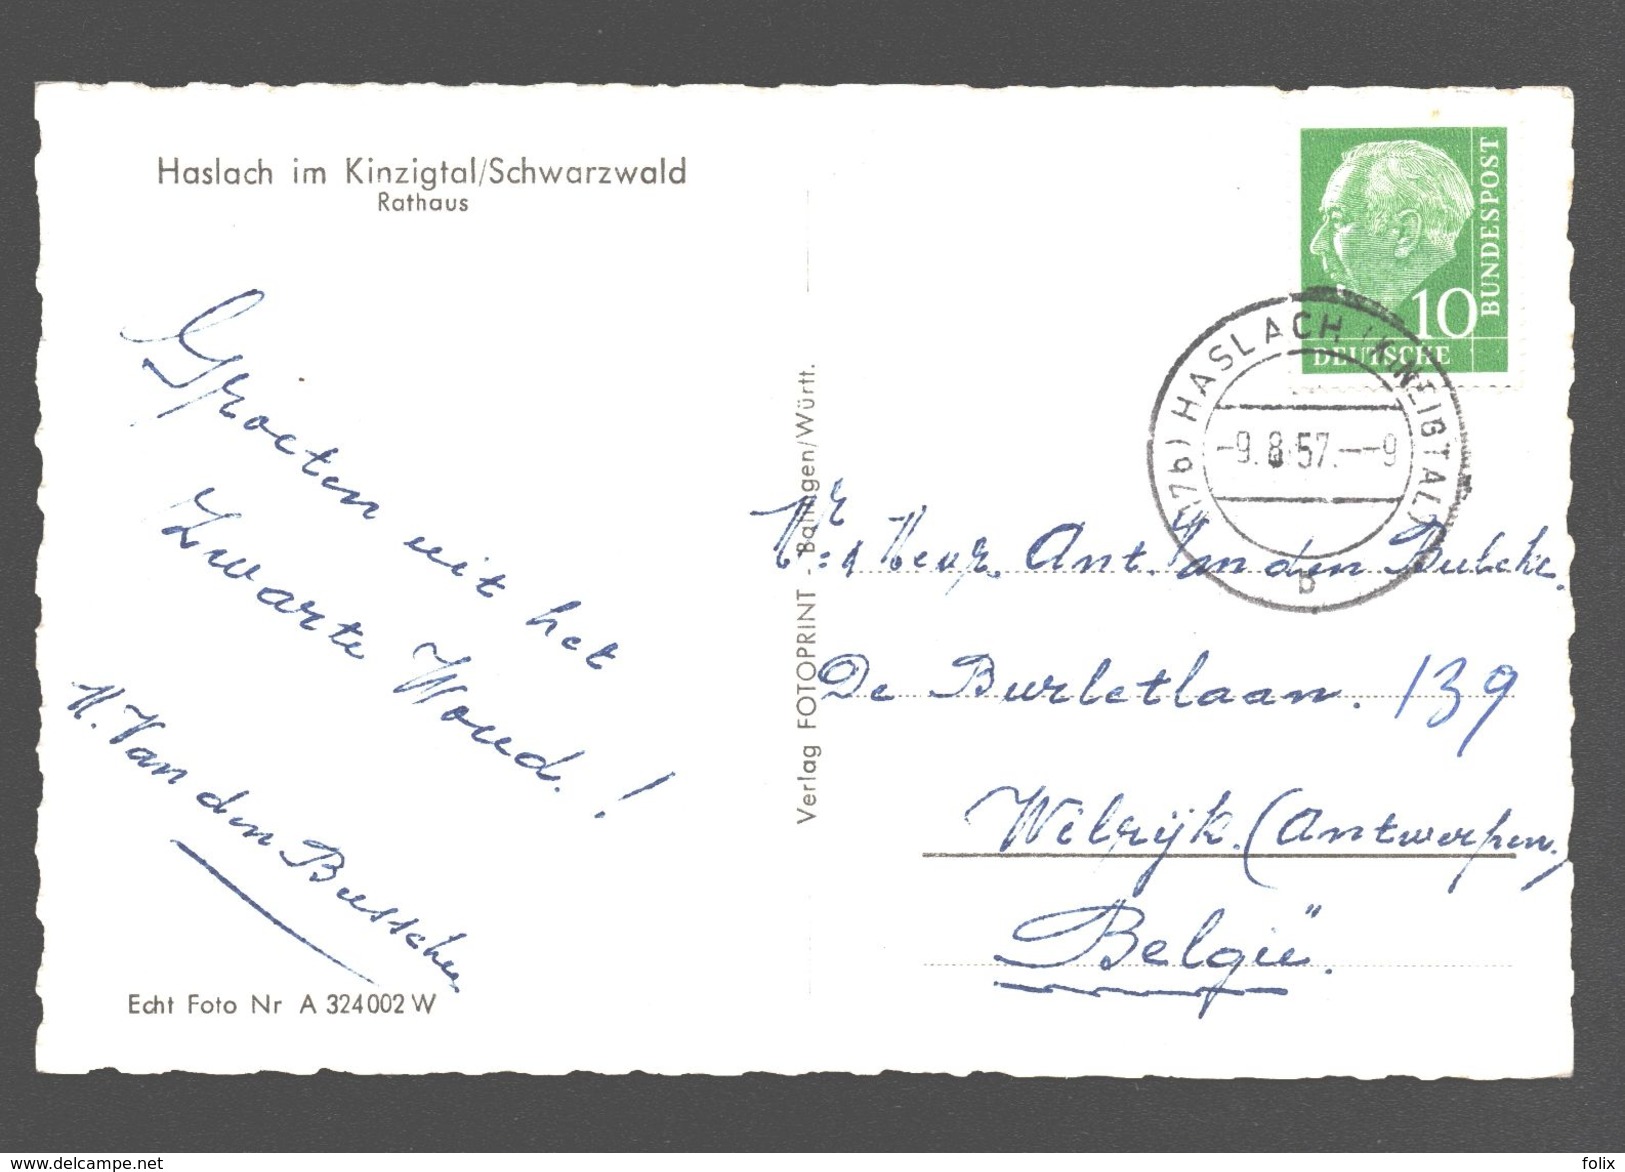 Haslach Im Kinzigtal / Schwarzwald - Rathaus - Fotokarte - 1957 - Haslach